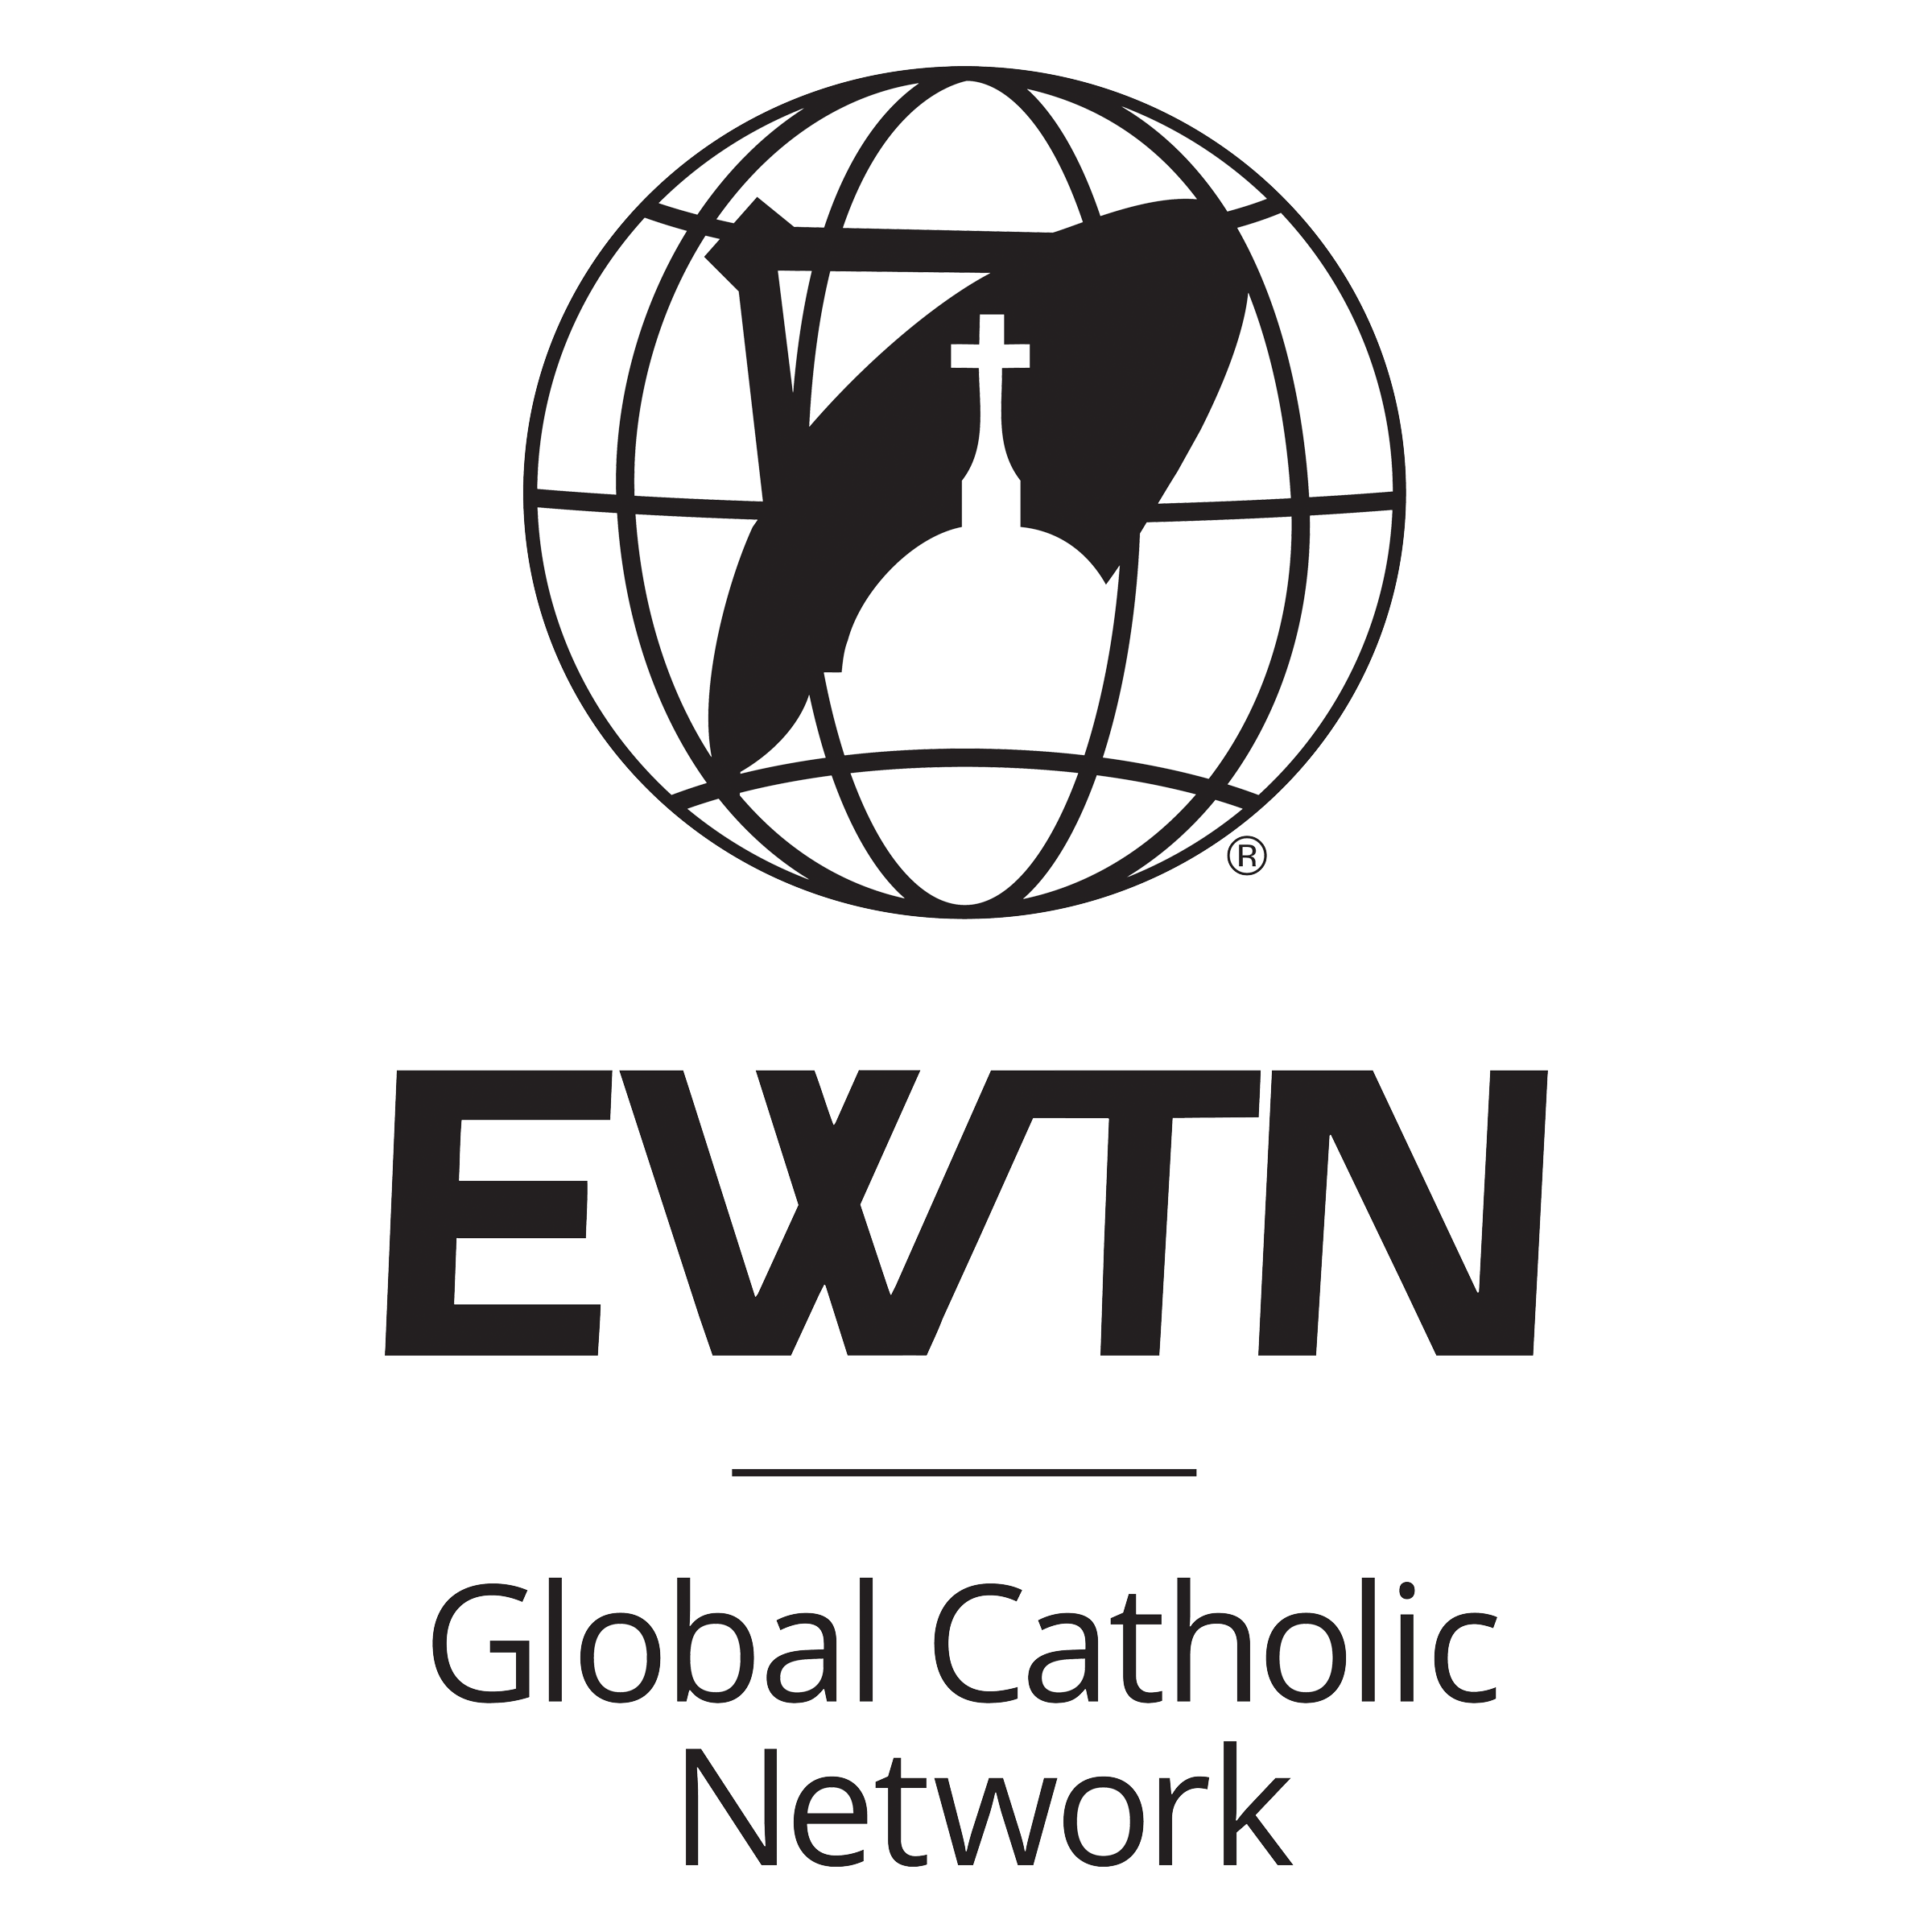 EWTN Logo